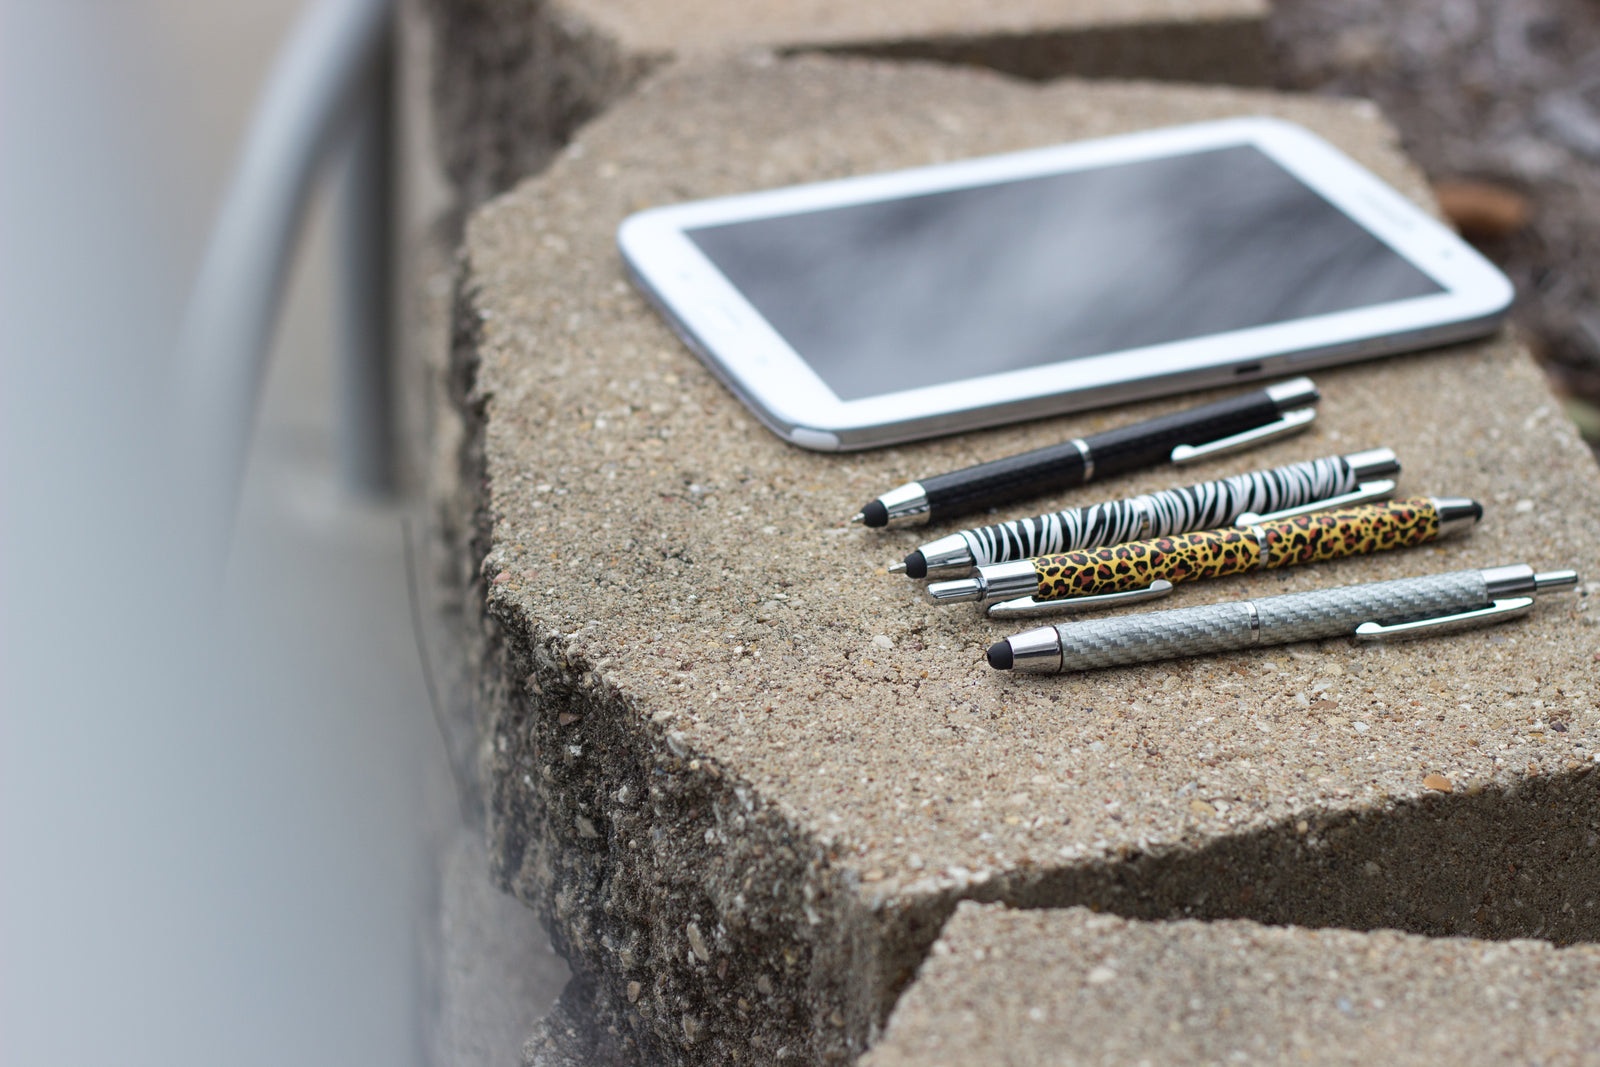 Silver Carbon Stylus Pen | Retractable Premier Series Stylus Pen